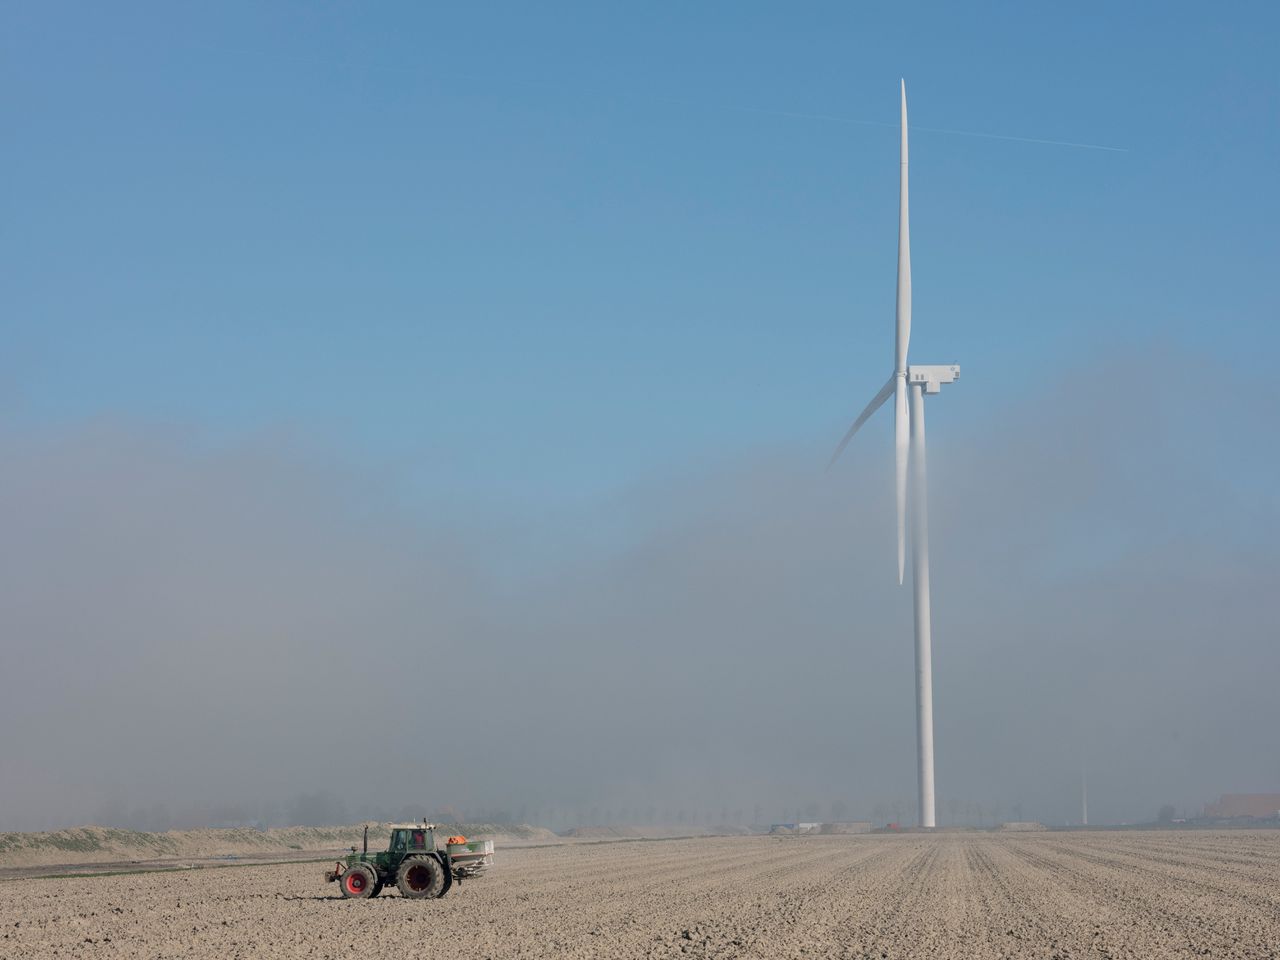 Akker in de Wieringermeerpolder. Verkoop van bouwrechten voor windmolens maakte 32 boeren miljonair.